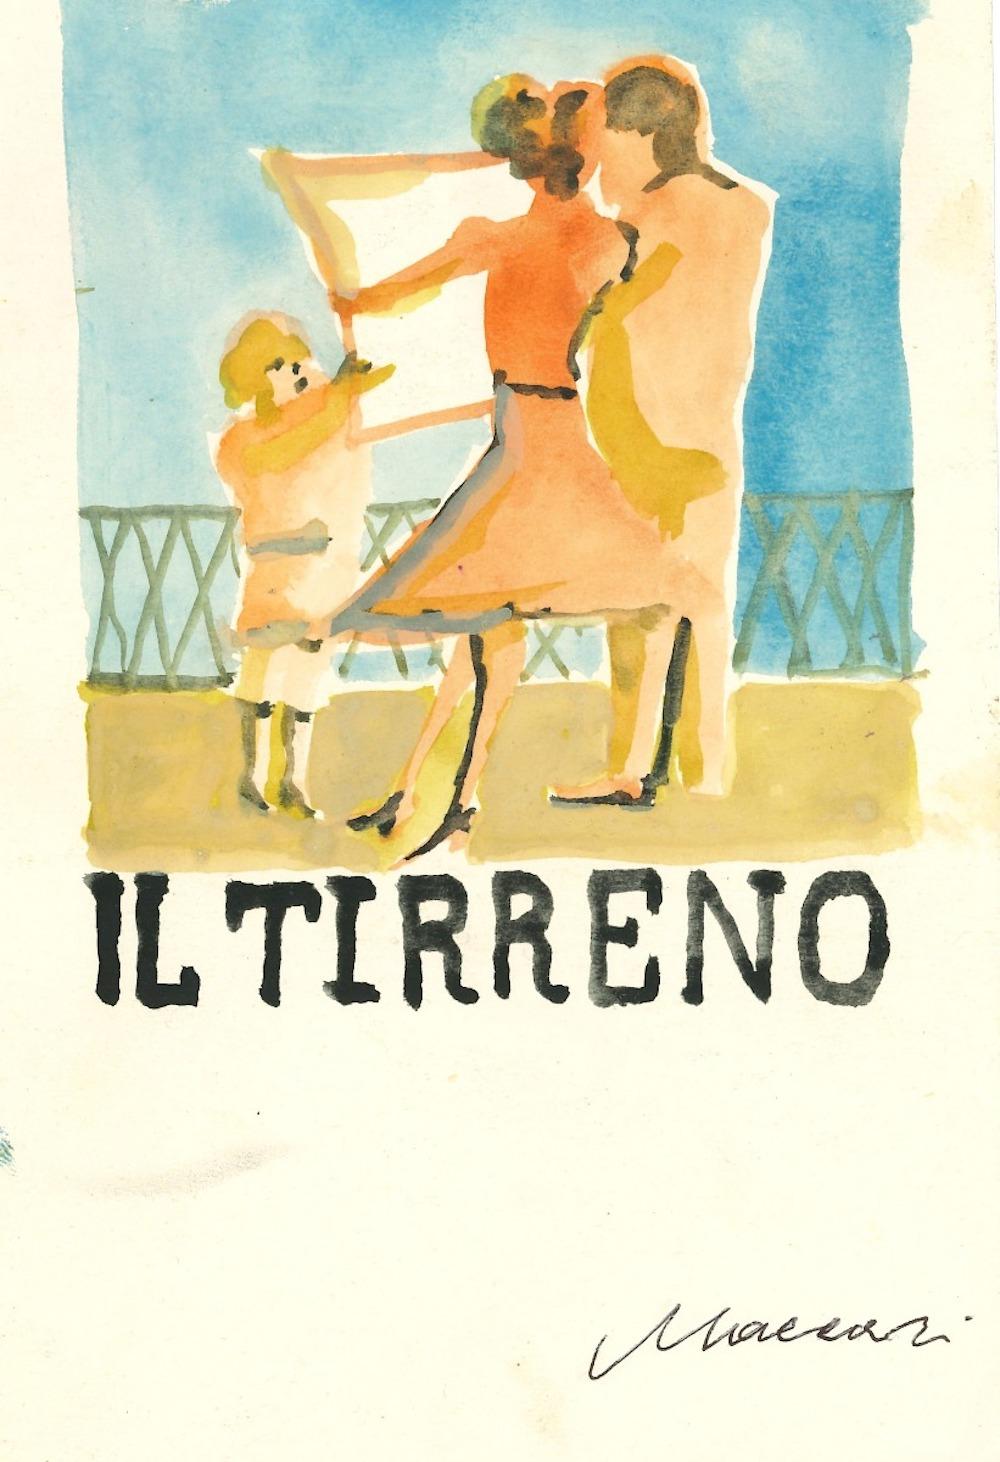 Cover for "Il Tirreno" - Watercolor by Mino Maccari - 1960s